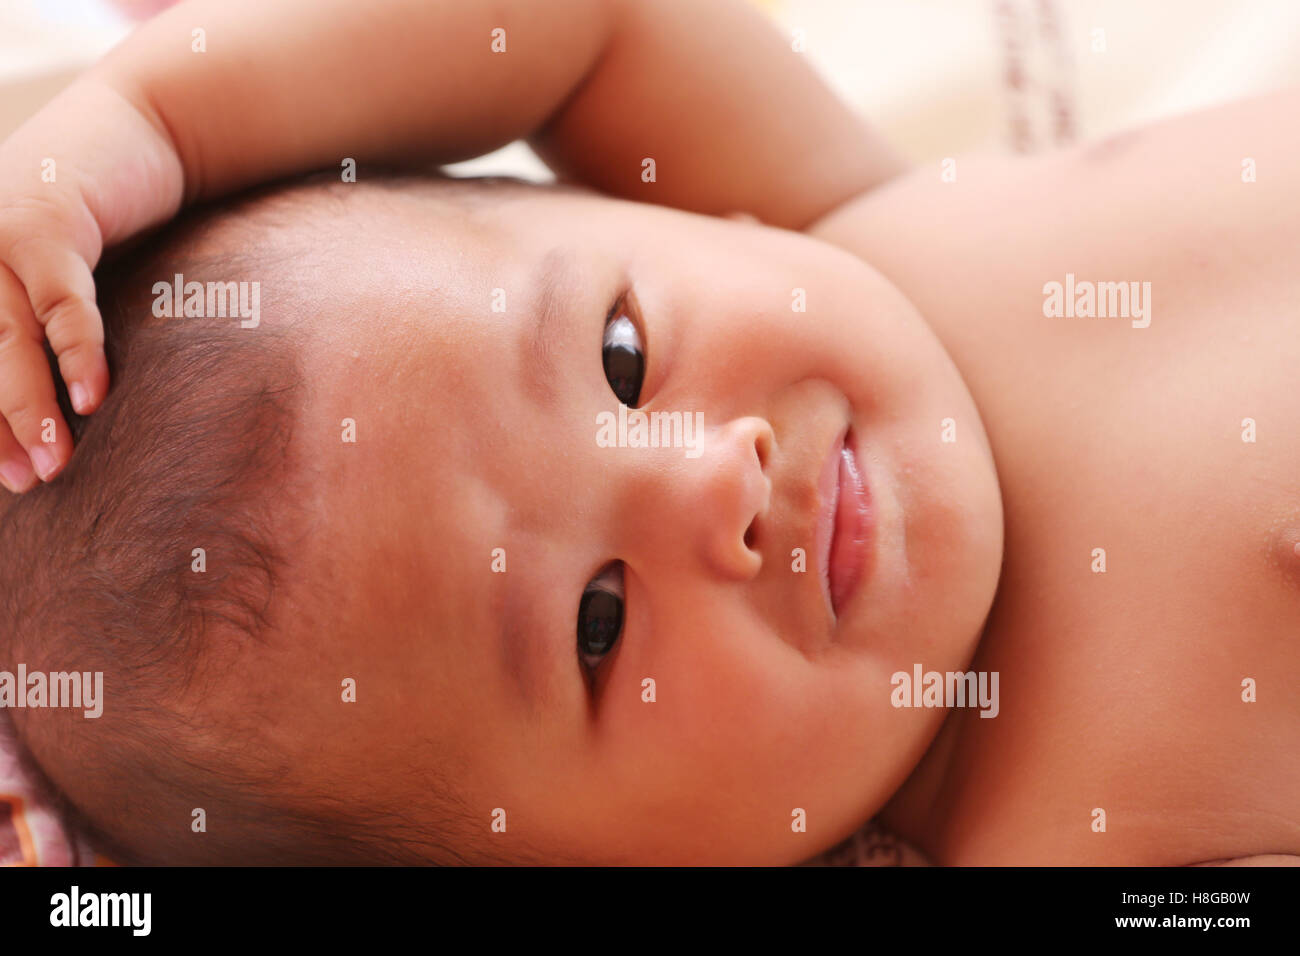 Asiatische Baby weint auf Bett, Konzept für Gesundheit und Wachstum. Stockfoto